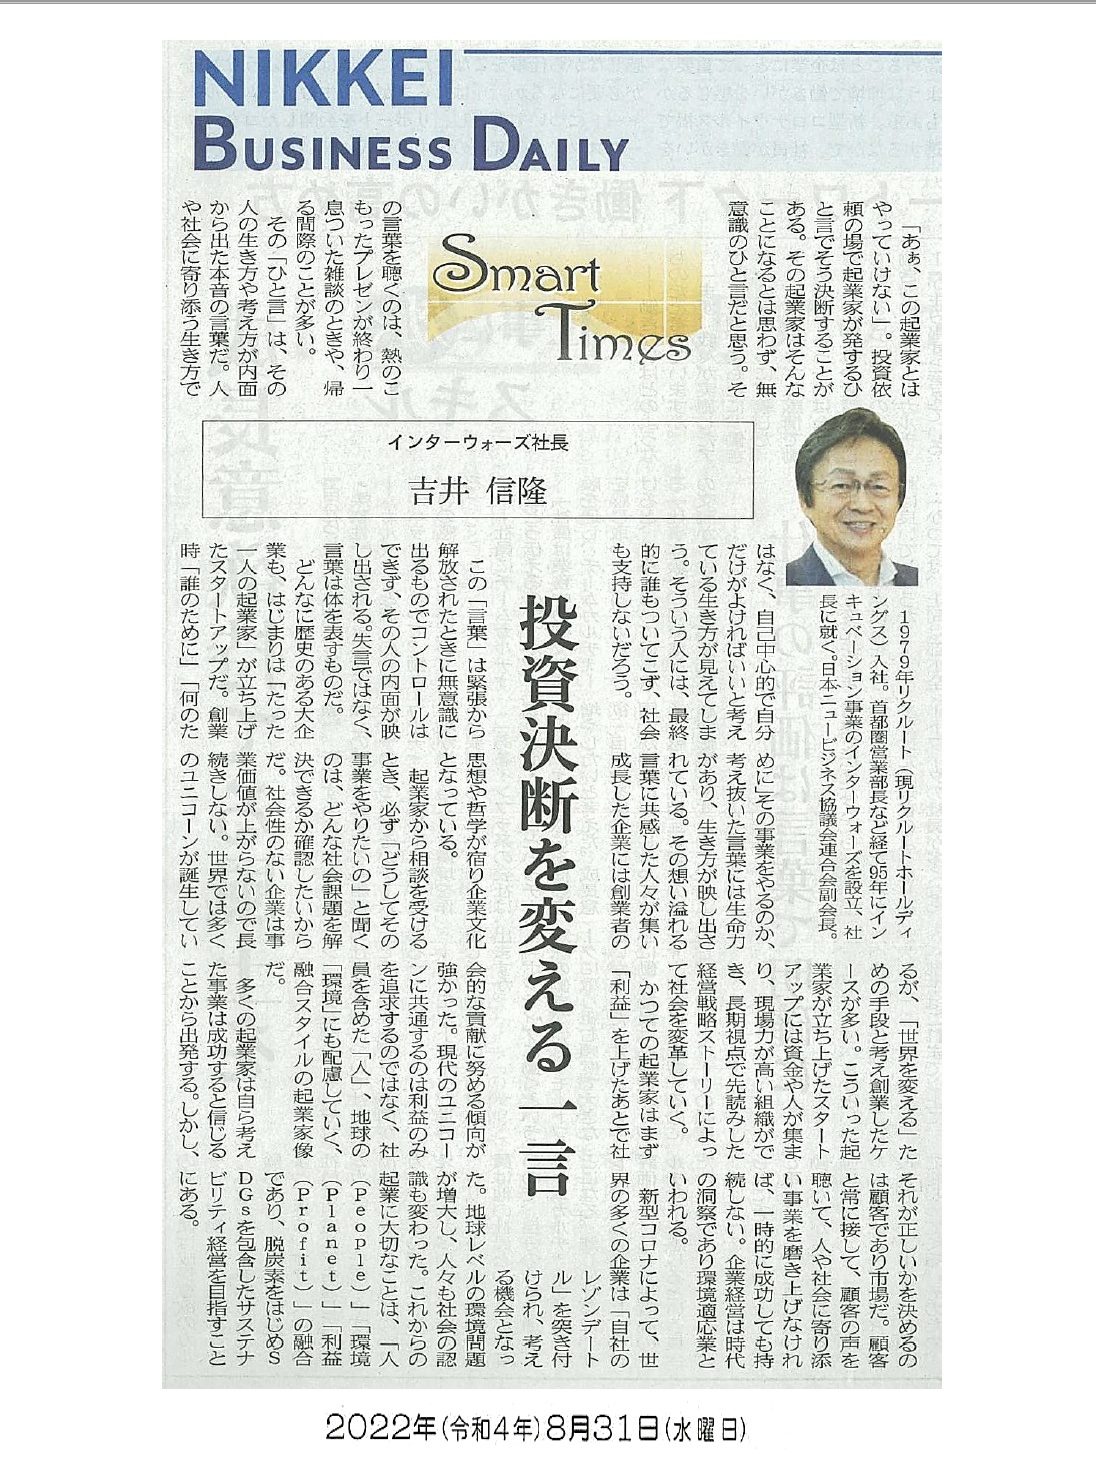 日経産業新聞 Smart Times「投資決断を変える一言」